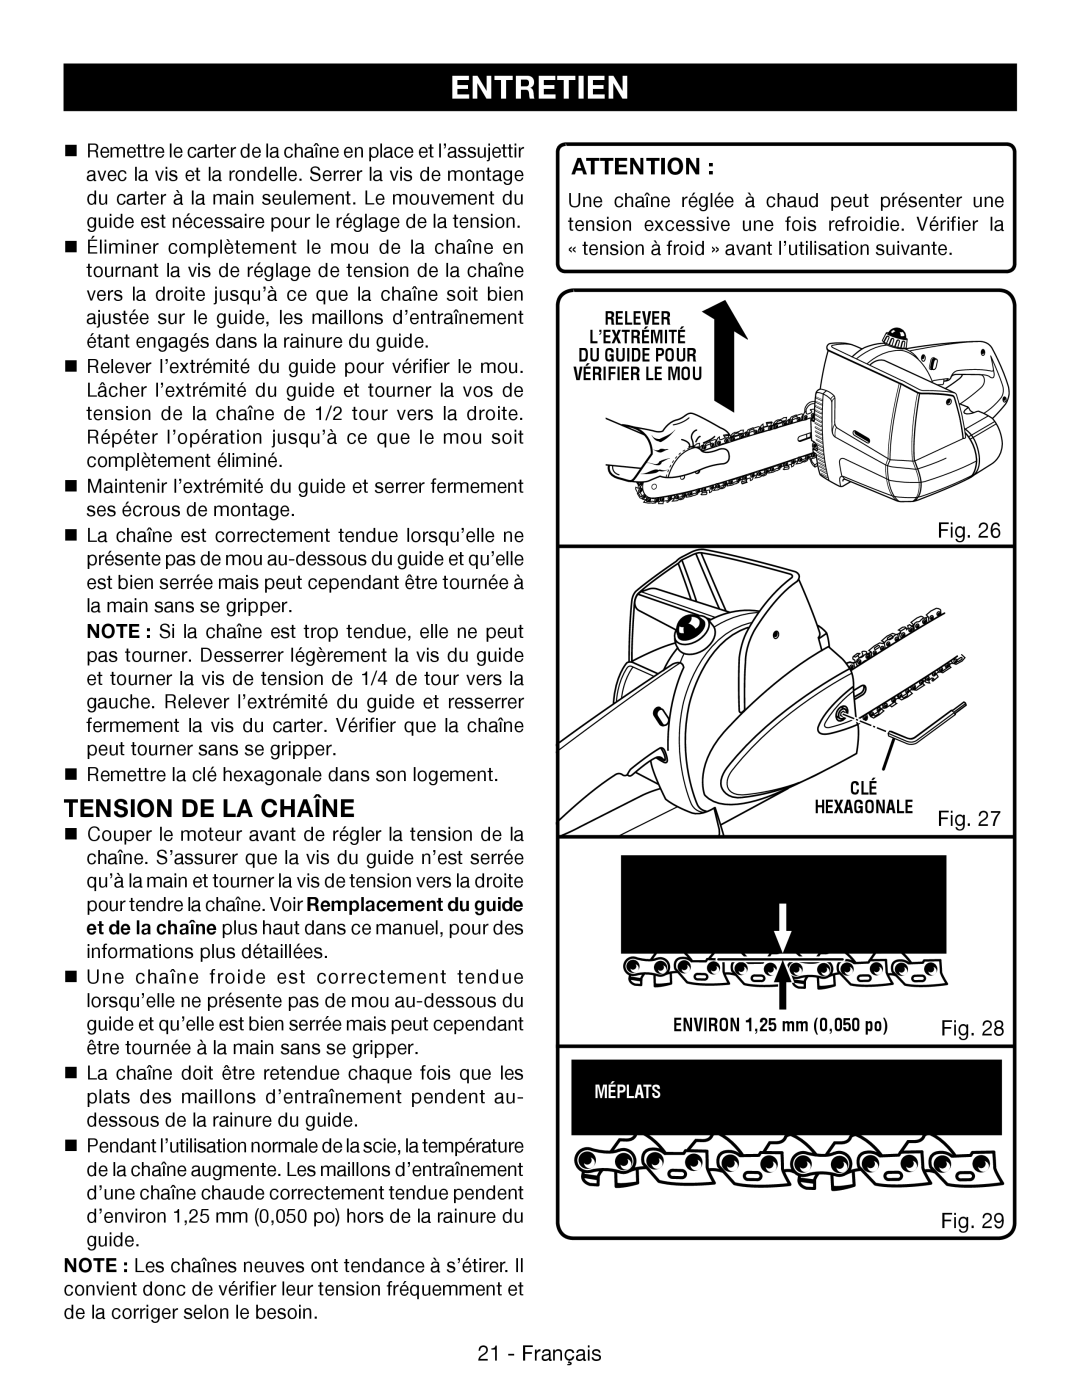 Ryobi P545 manuel dutilisation Tension De La Chaîne, Entretien, Attention , Fig, Français 